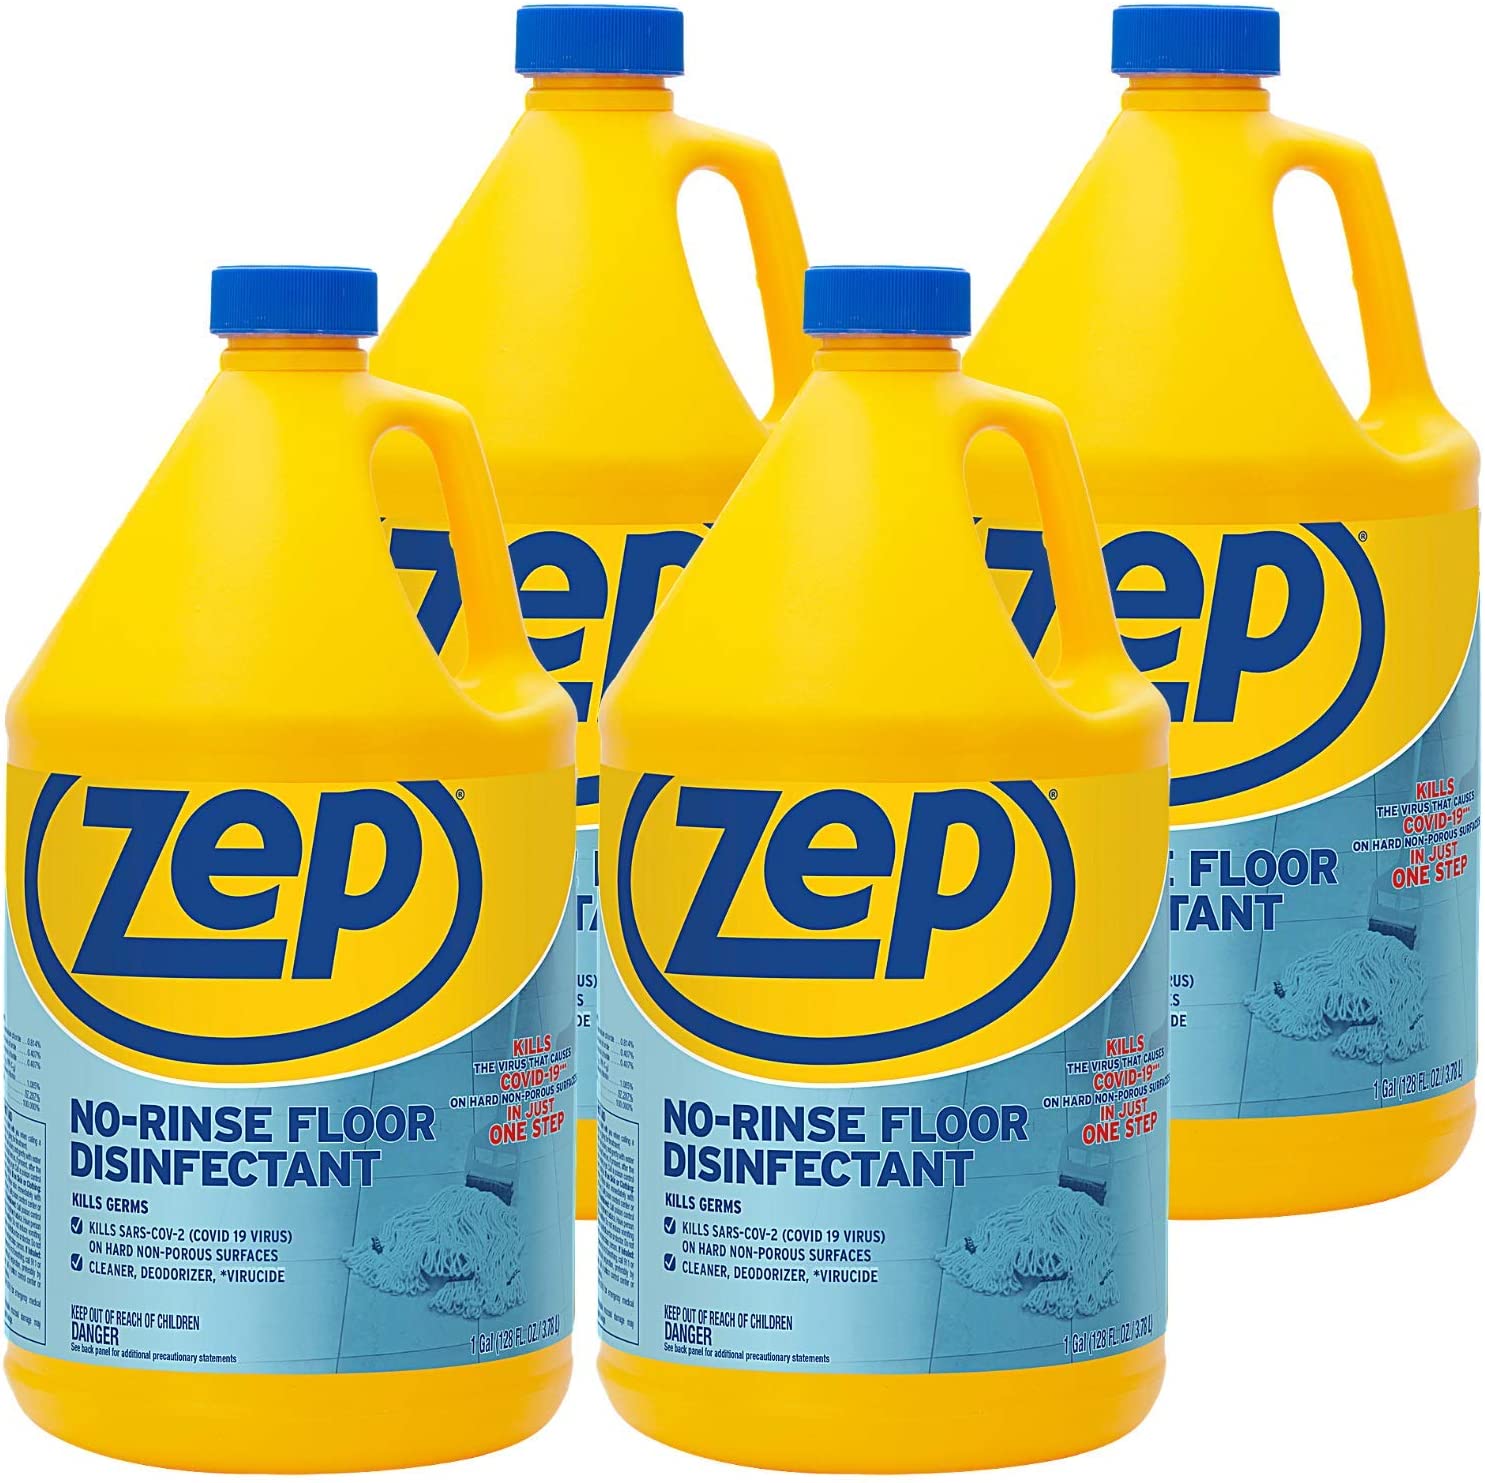 Zep Luxury 64-fl oz Floral Liquid Floor Cleaner in the Floor